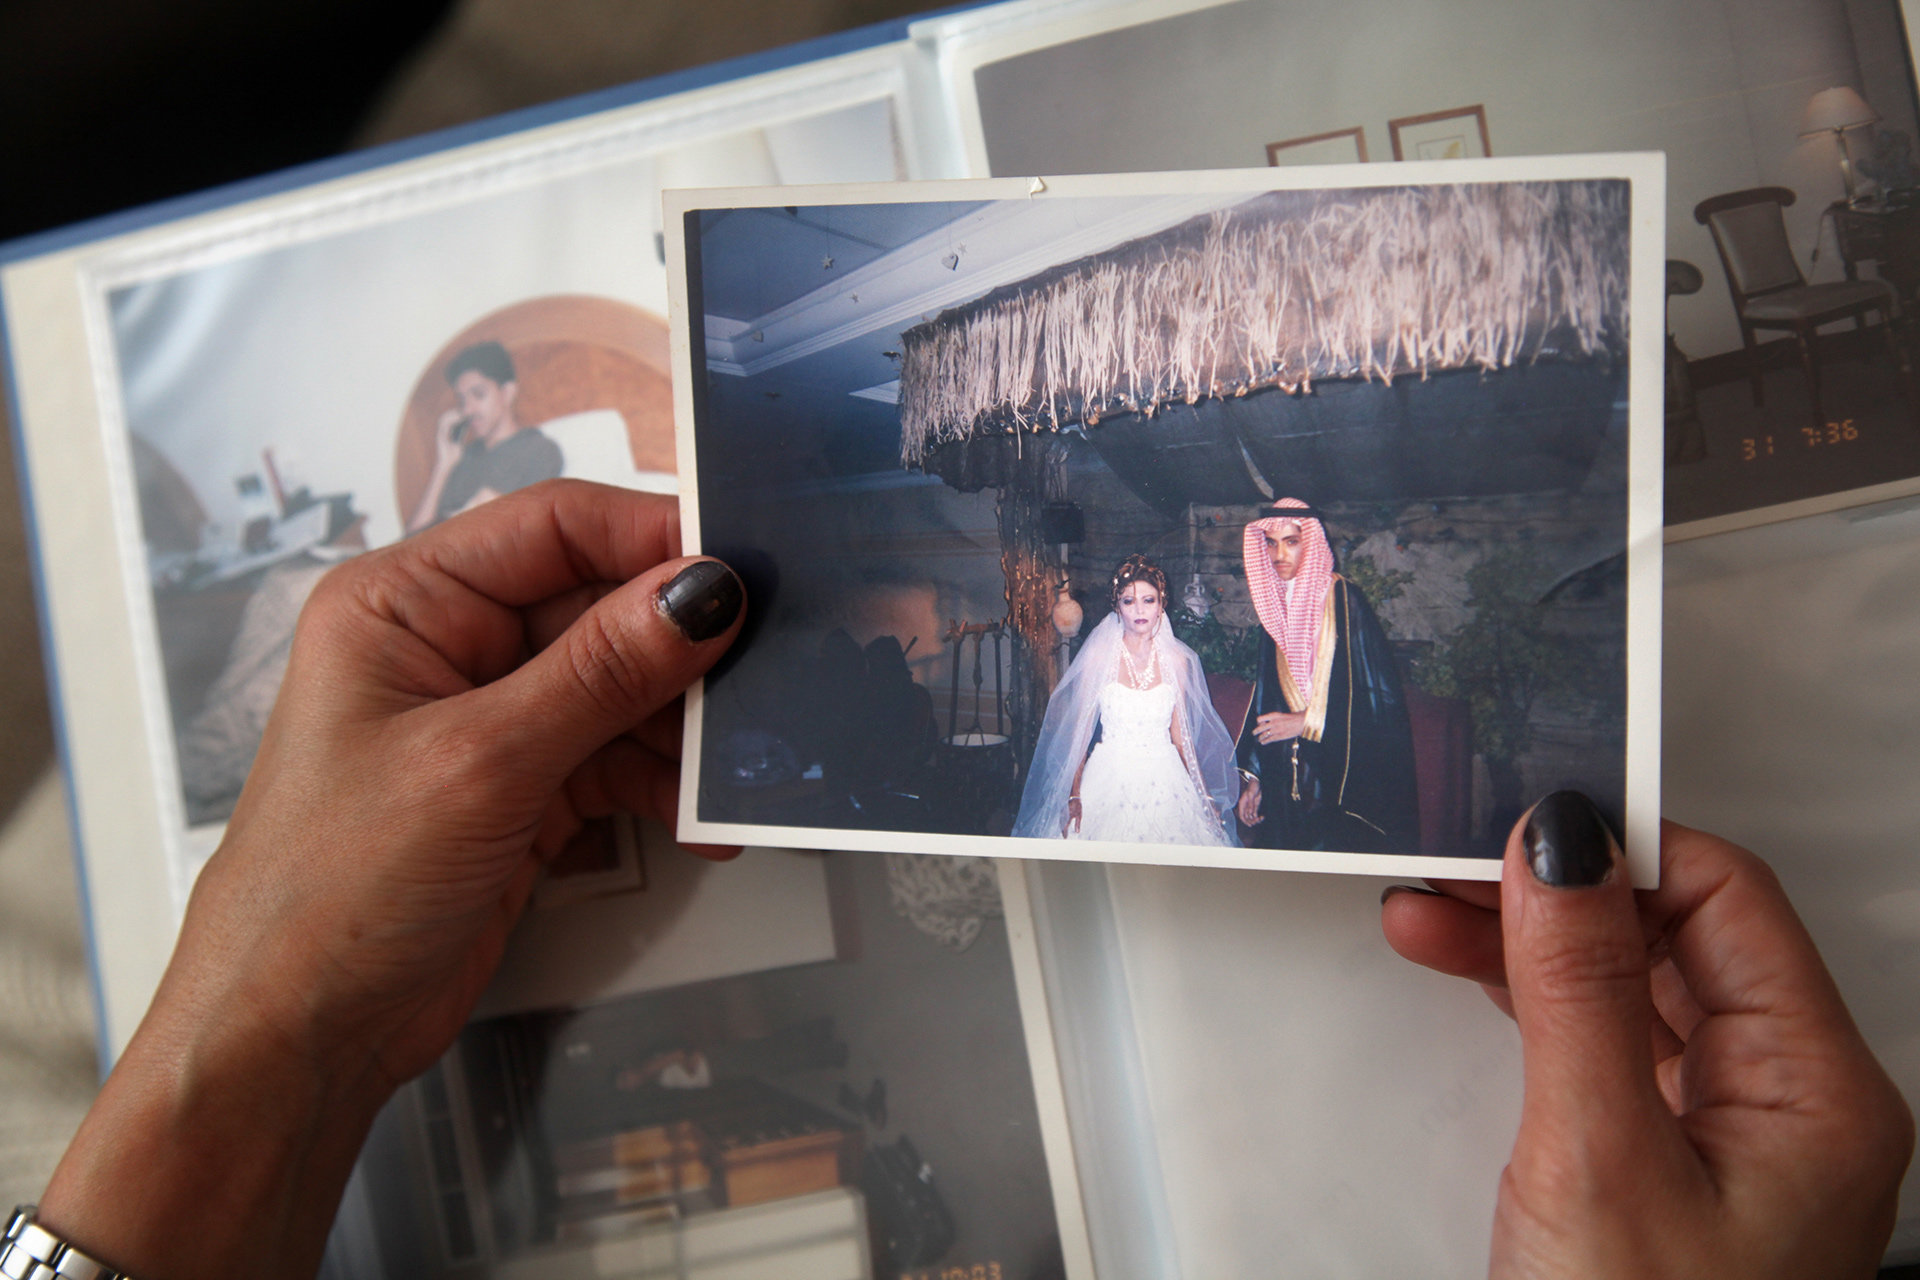 Hochzeitsfoto von Ralf Badawi und seiner Frau in Saudi-Arabien